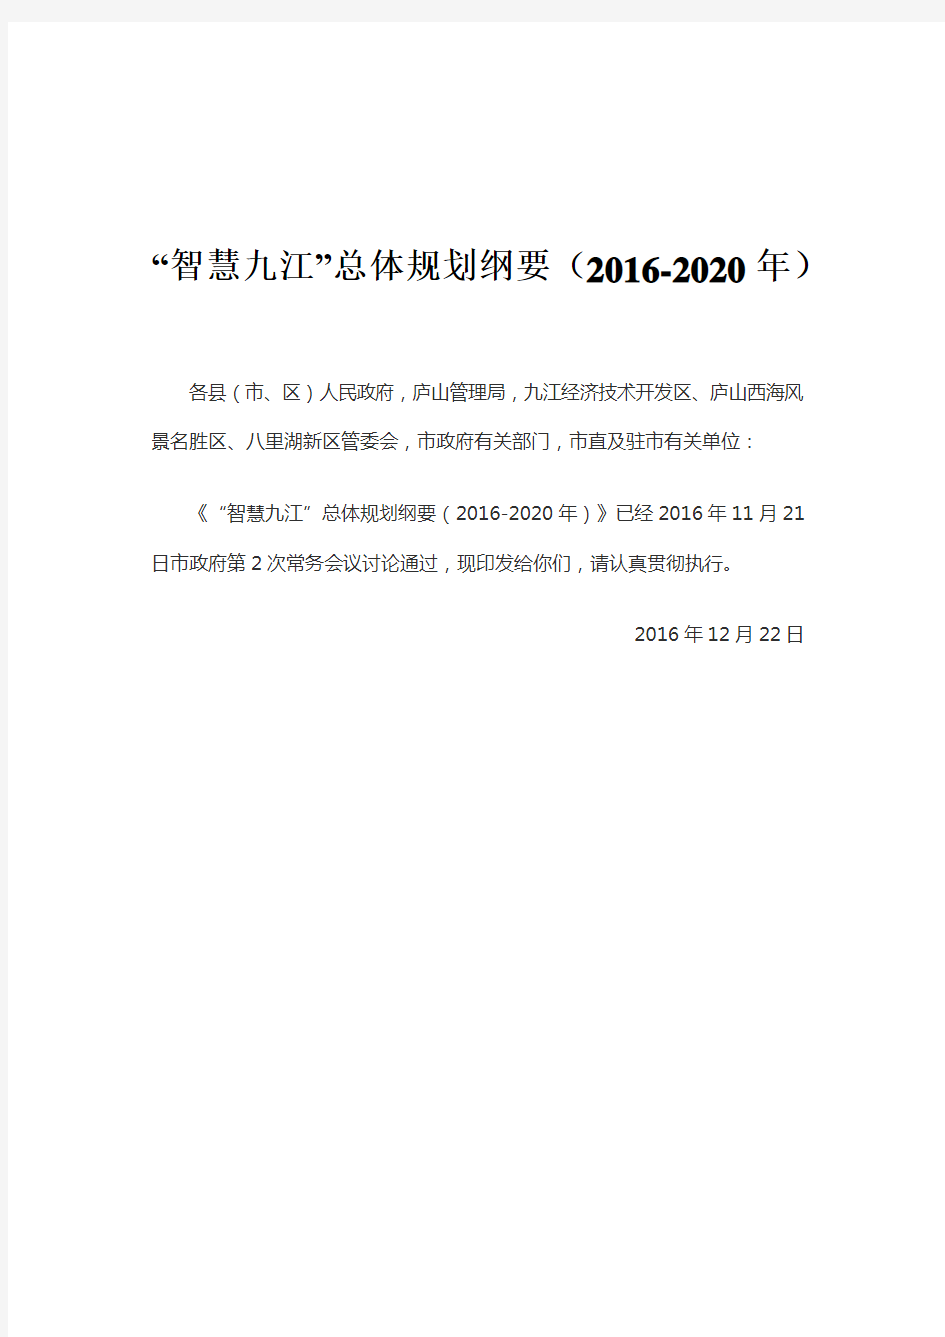 “智慧九江”总体规划纲要(2016-2020年)